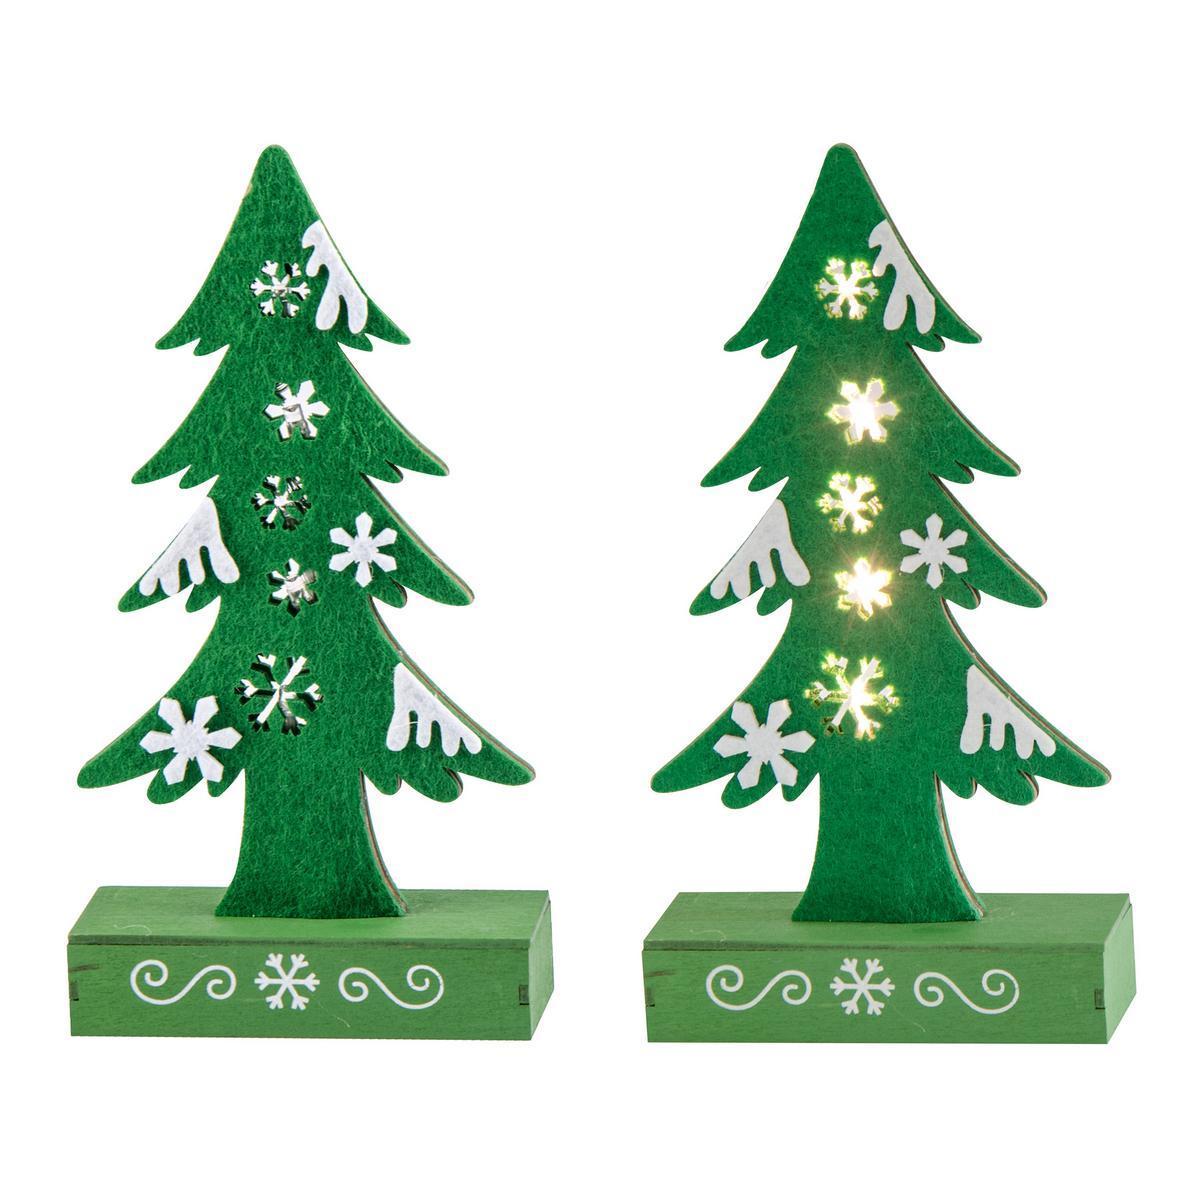 Sapin lumineux décoratif - Polybois et feutrine - 12 x 4 x H 23 cm - Vert et blanc